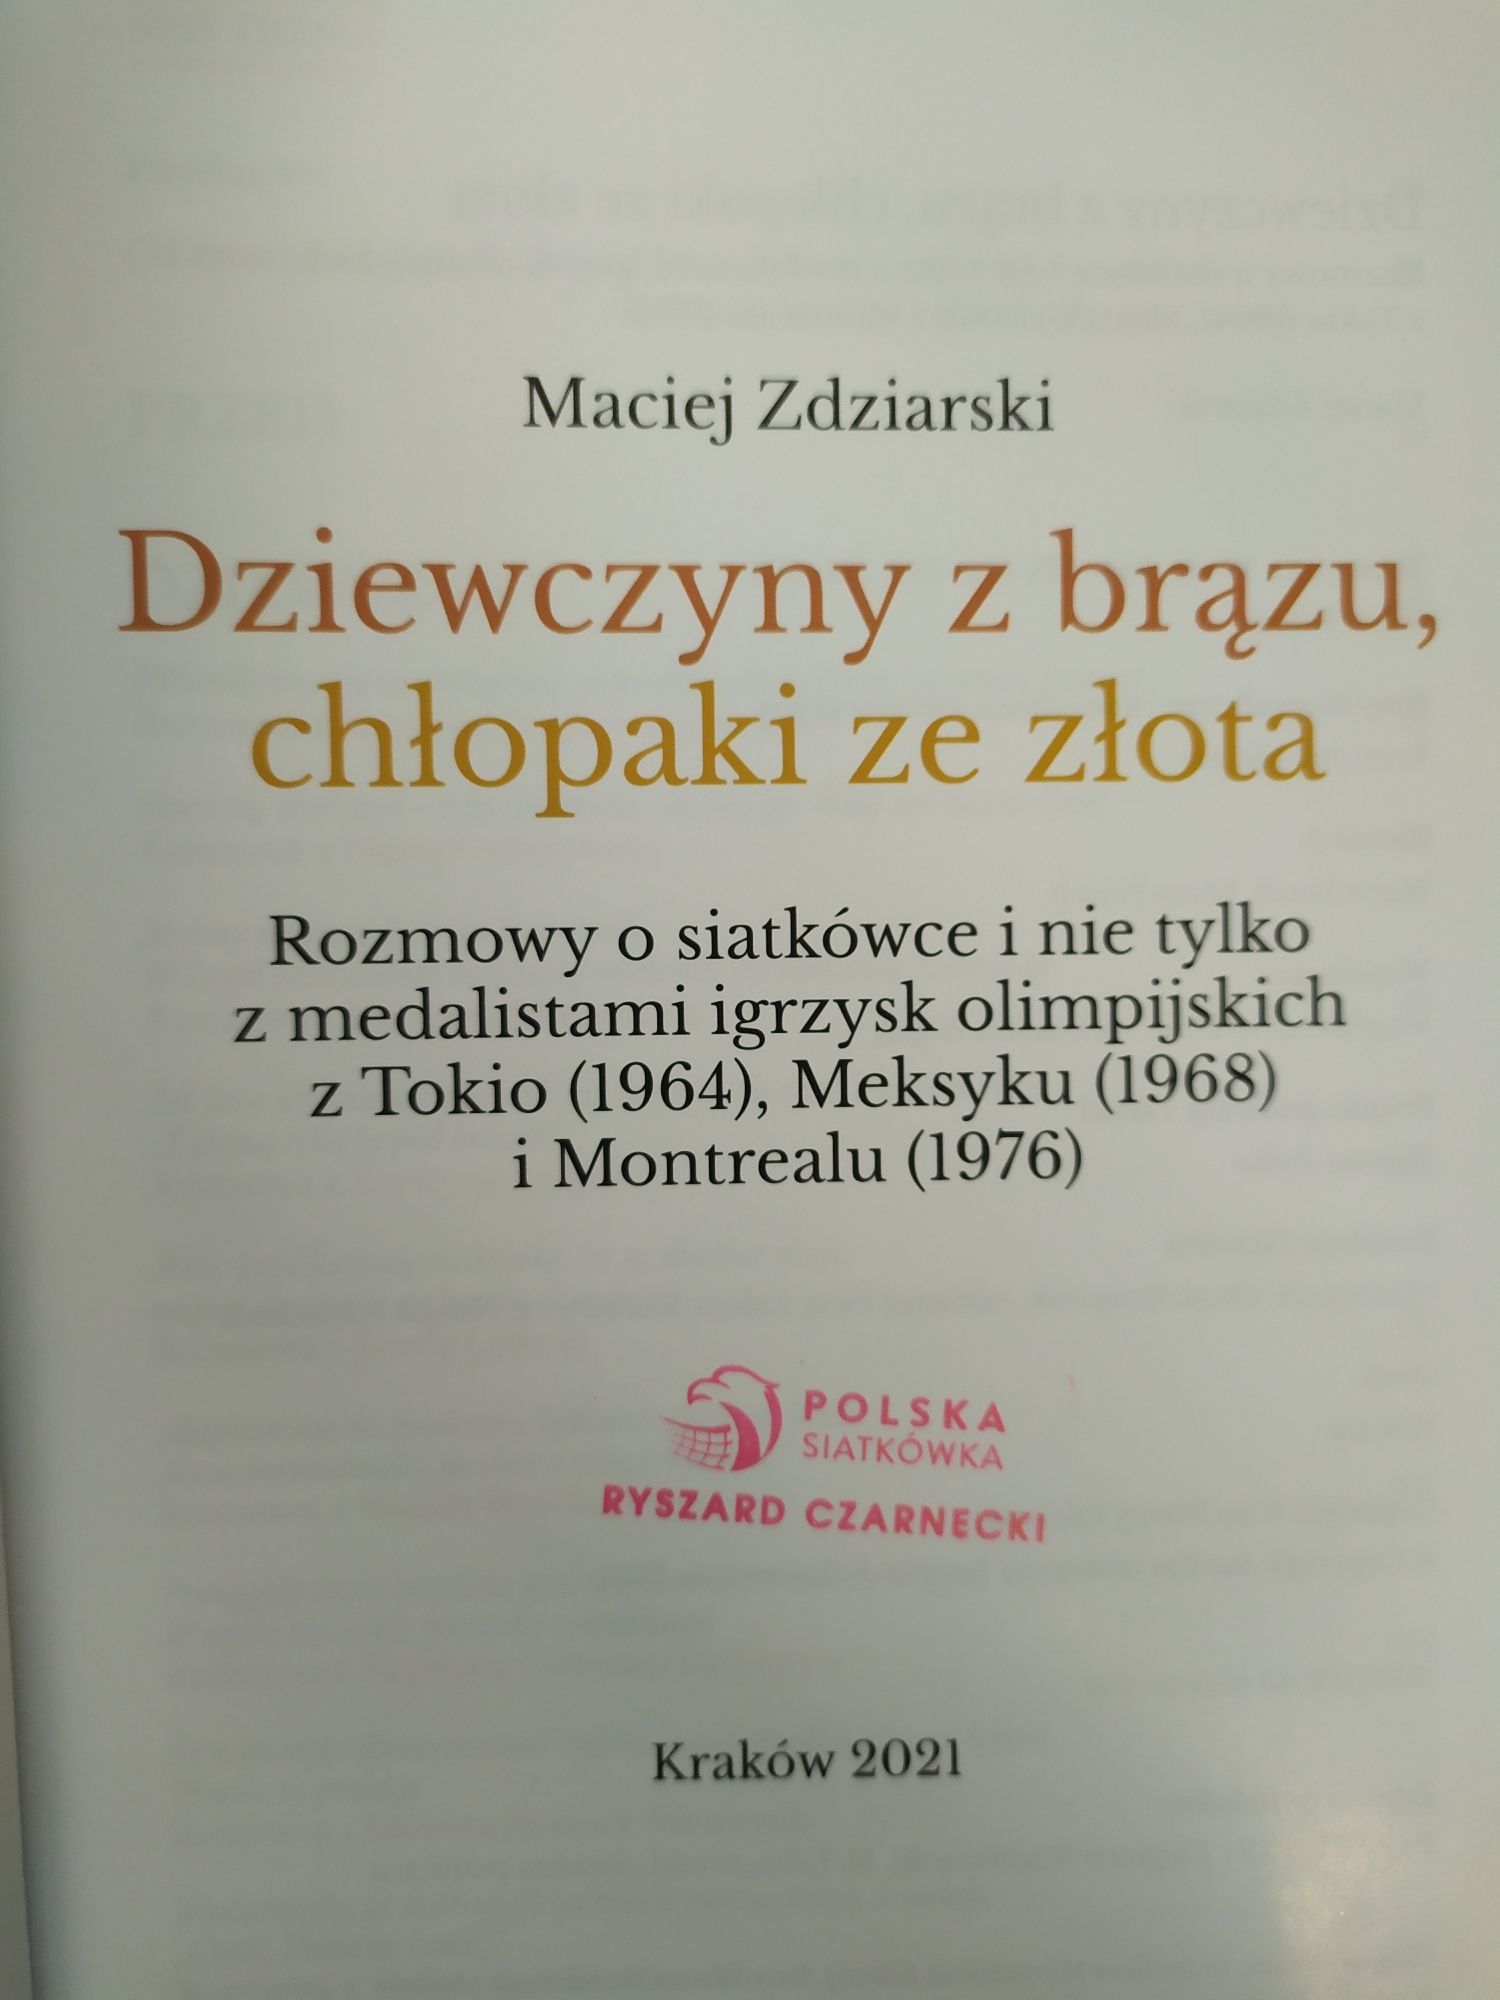 Książka "Dziewczyny z brązu, chłopaki ze złota" Maciej Zdziarski